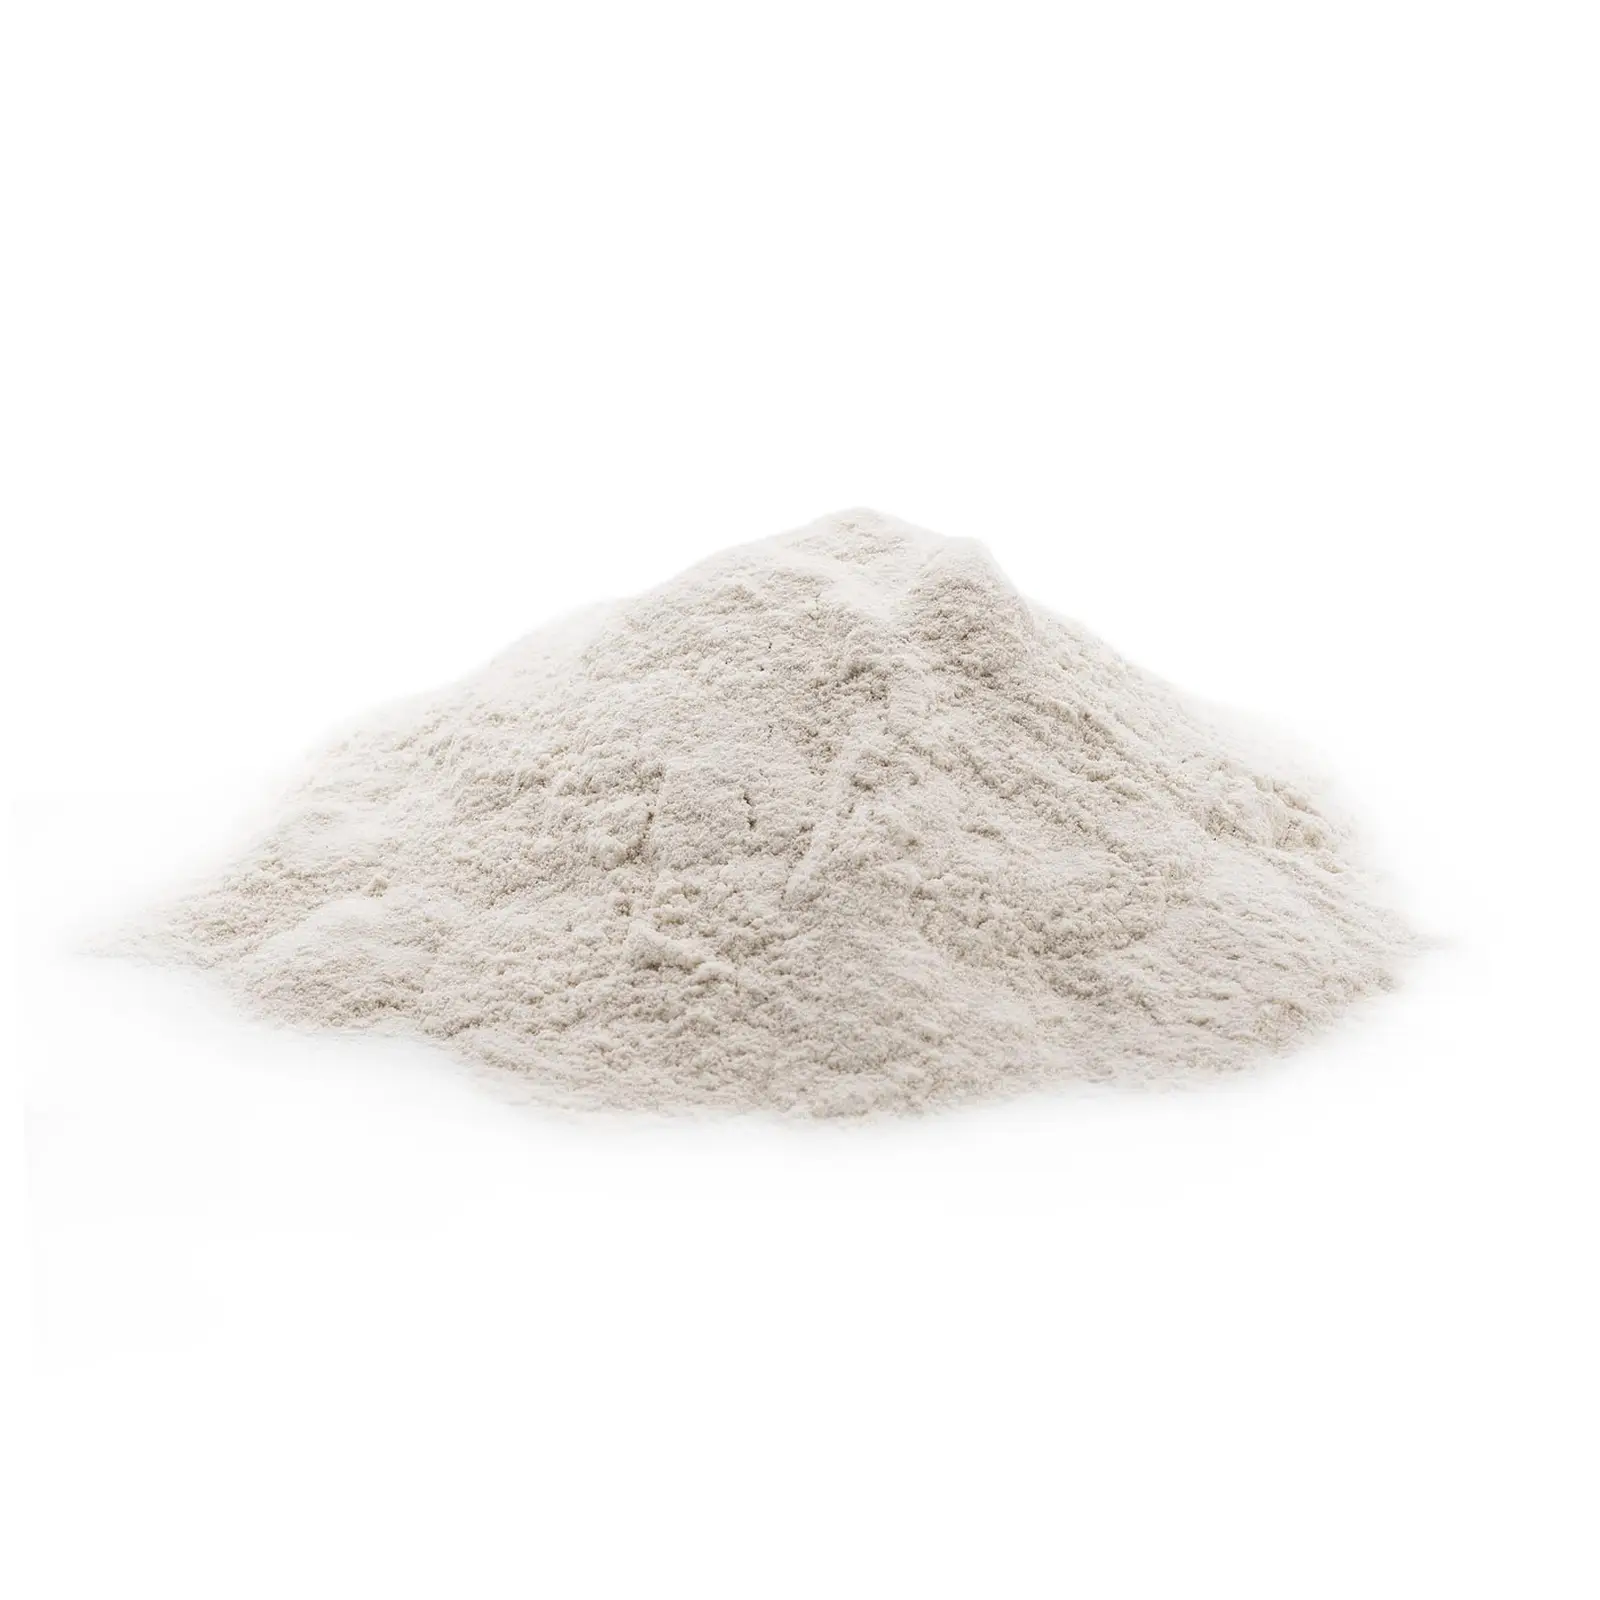 Bindemedel för pellets - 20 kg - Vetestärkelse - 5,5 - 7,5 pH